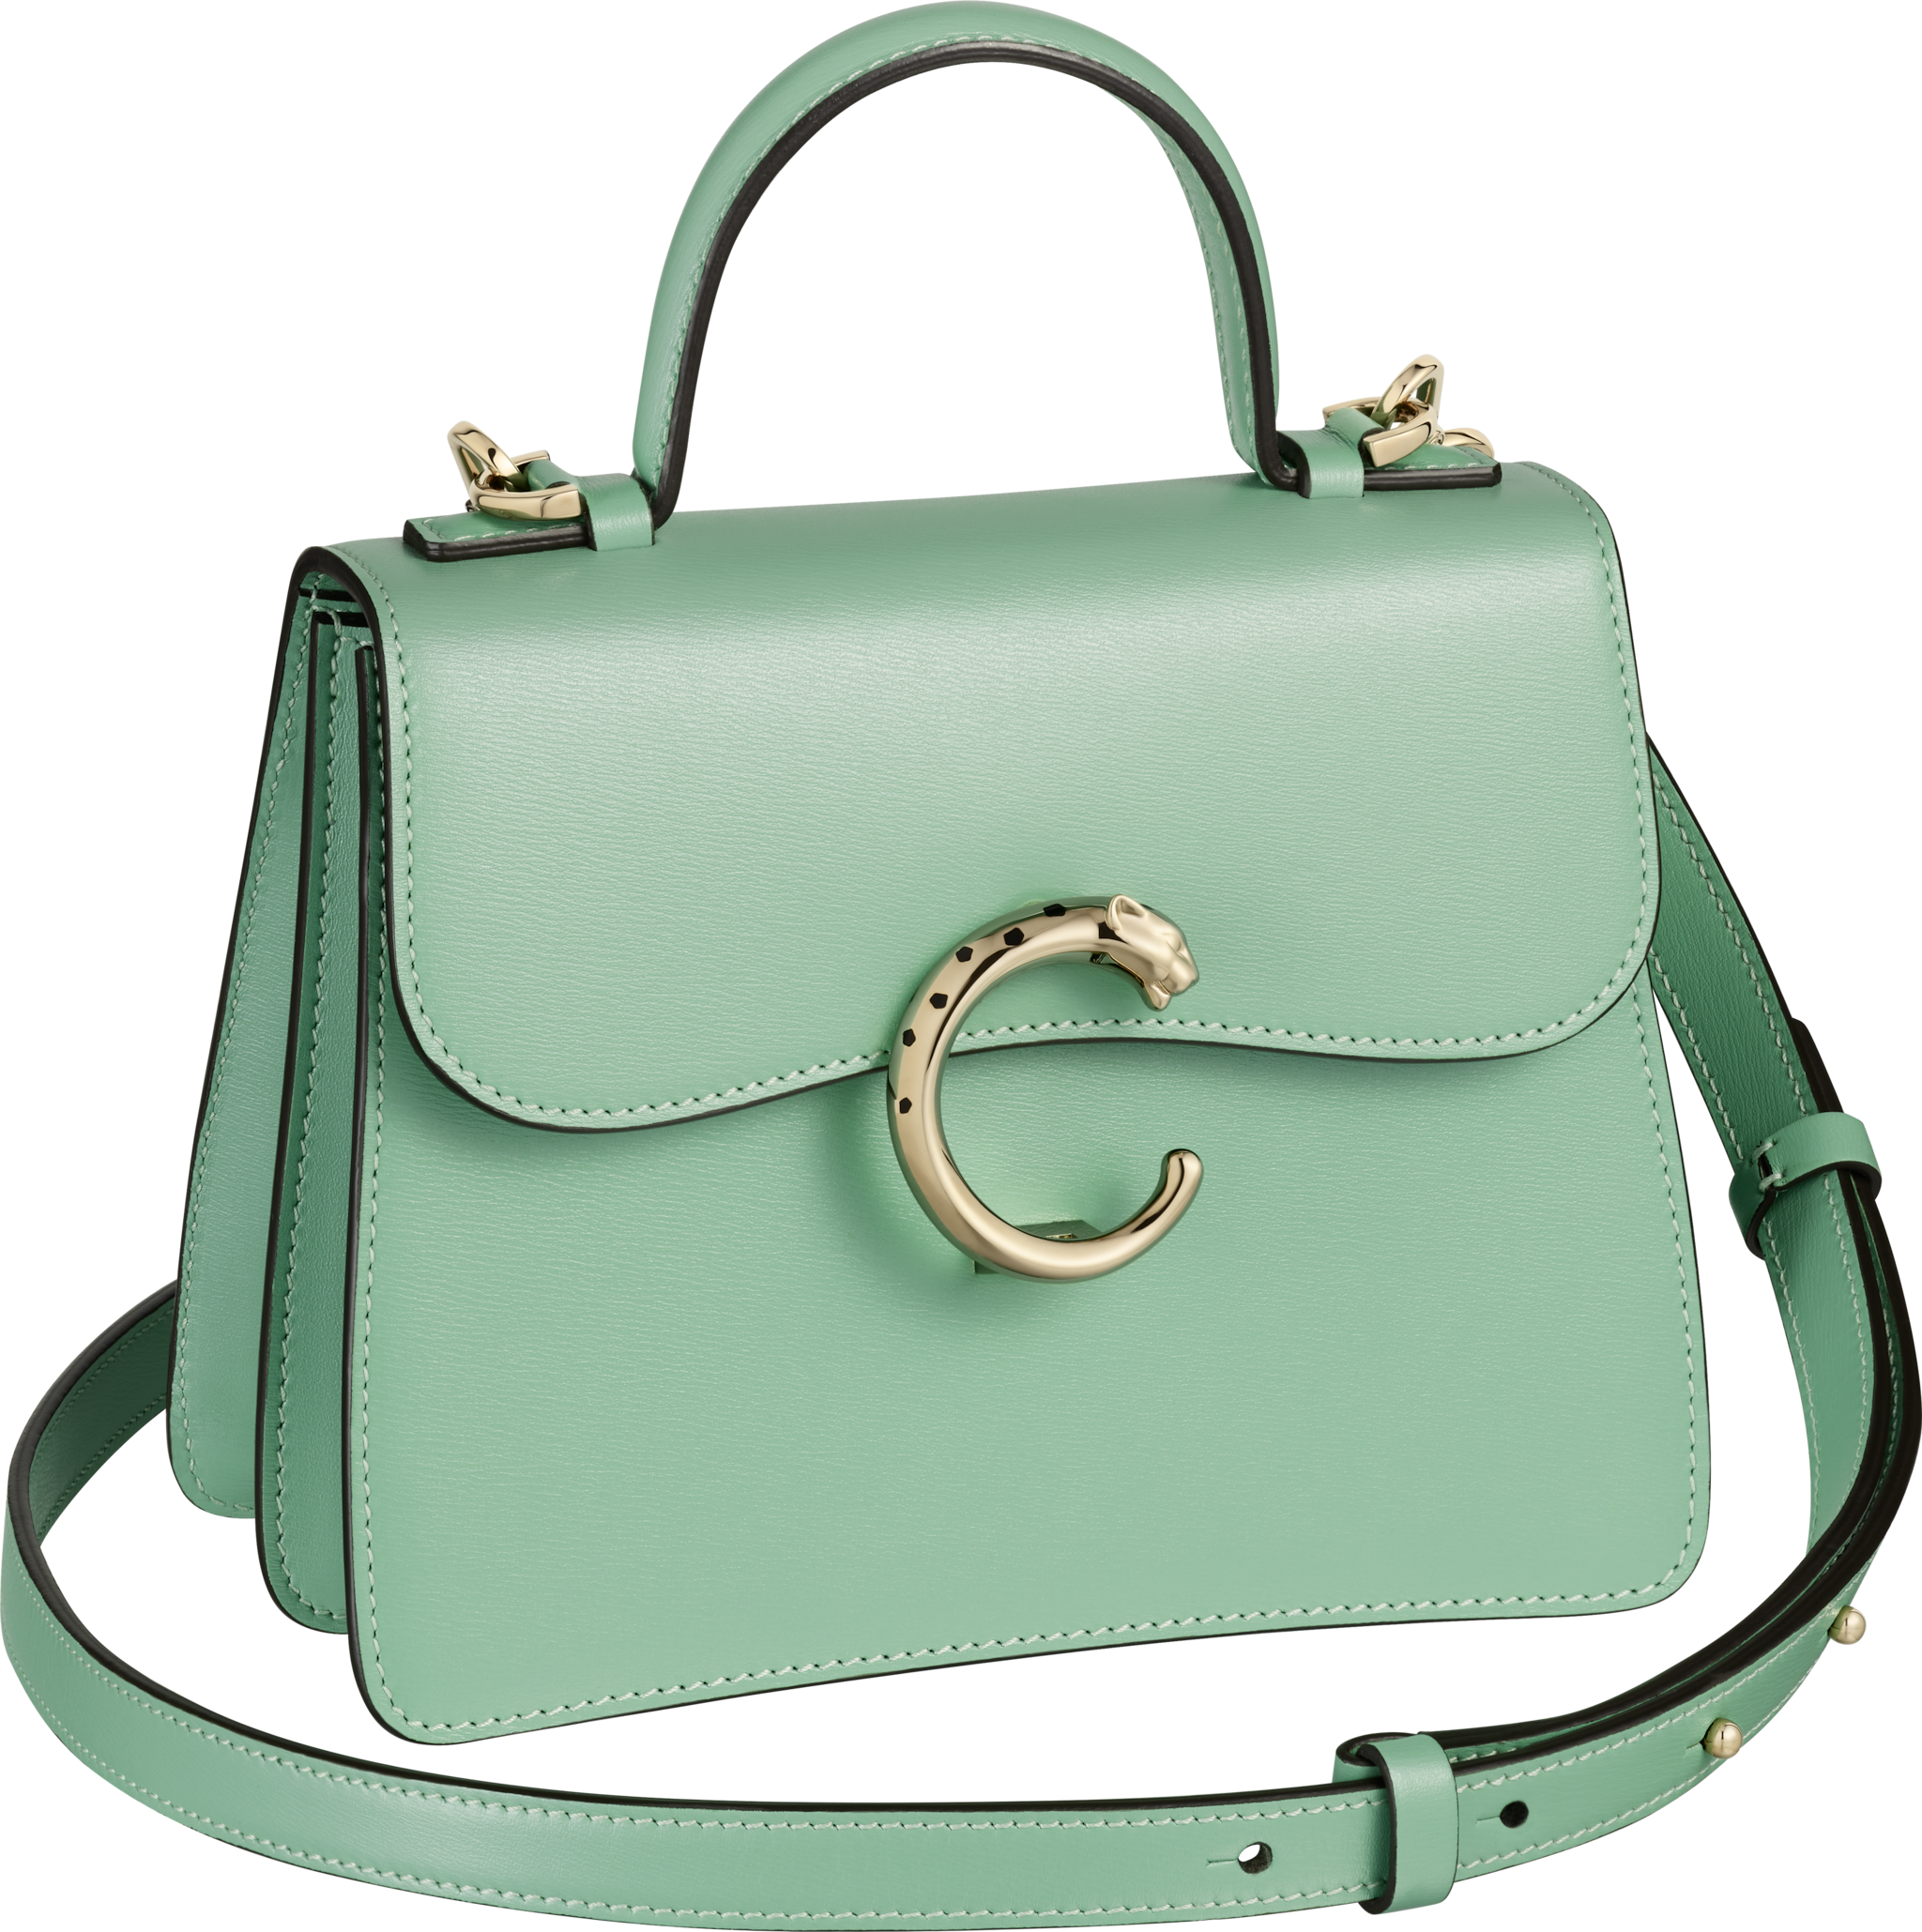 Handle bag small model, Panthère de CartierSage green calfskin, golden finish